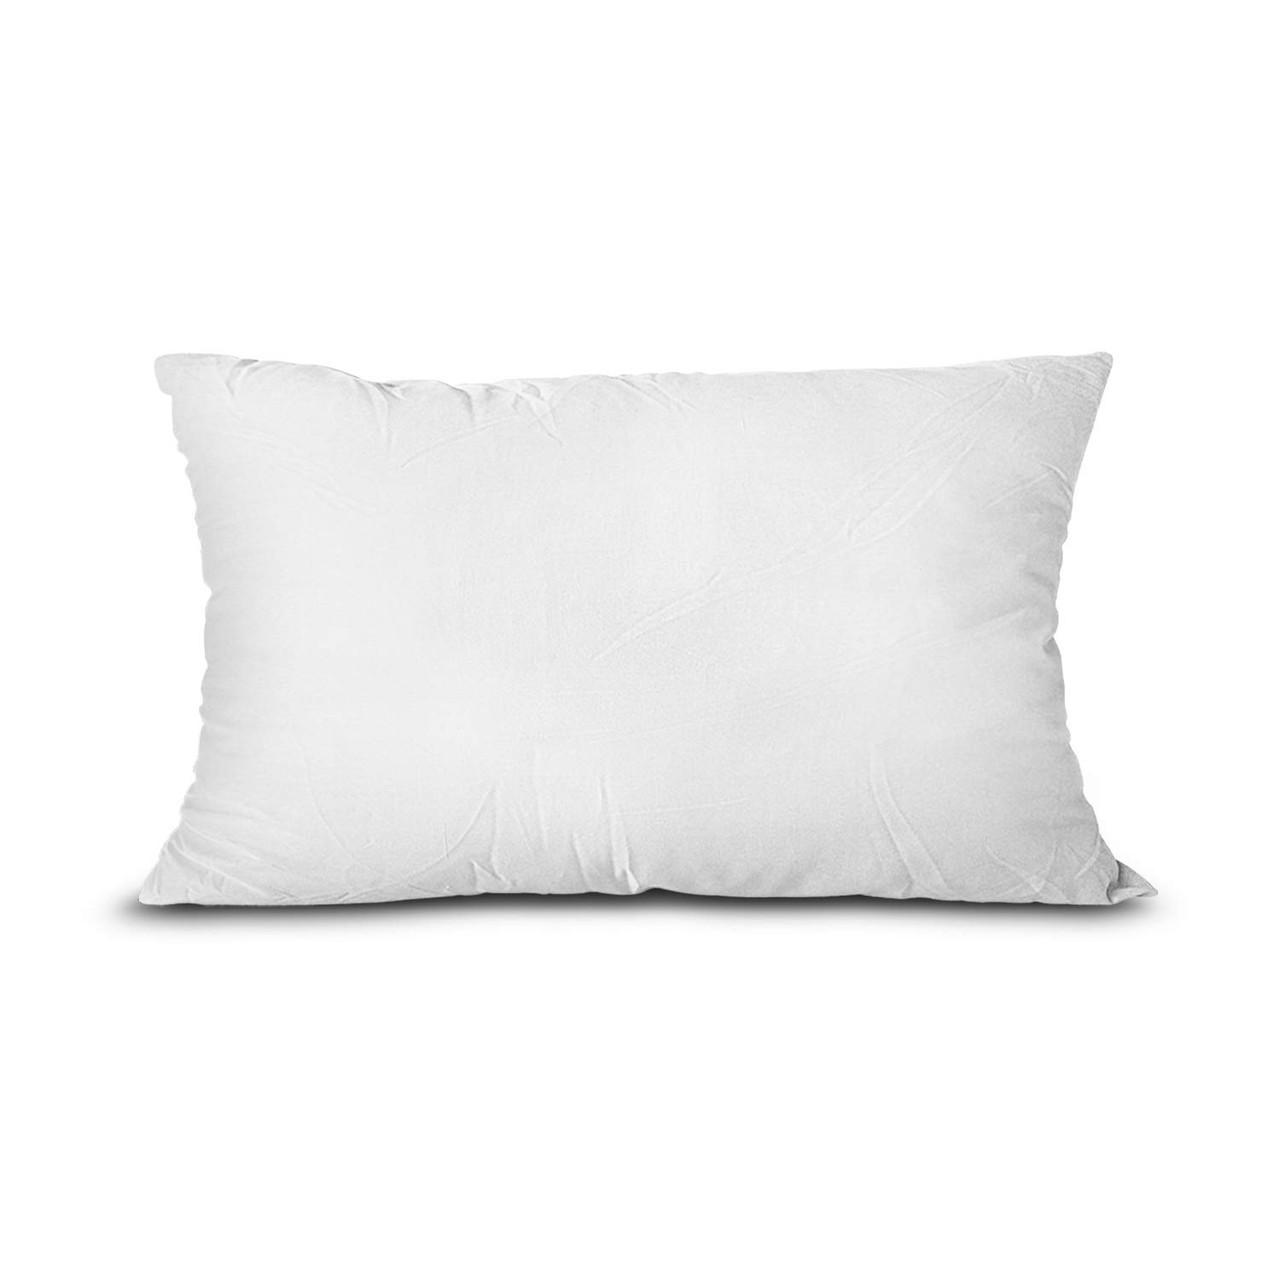 Edow Throw Pillow Insert, Lightweight Soft Polyester Down